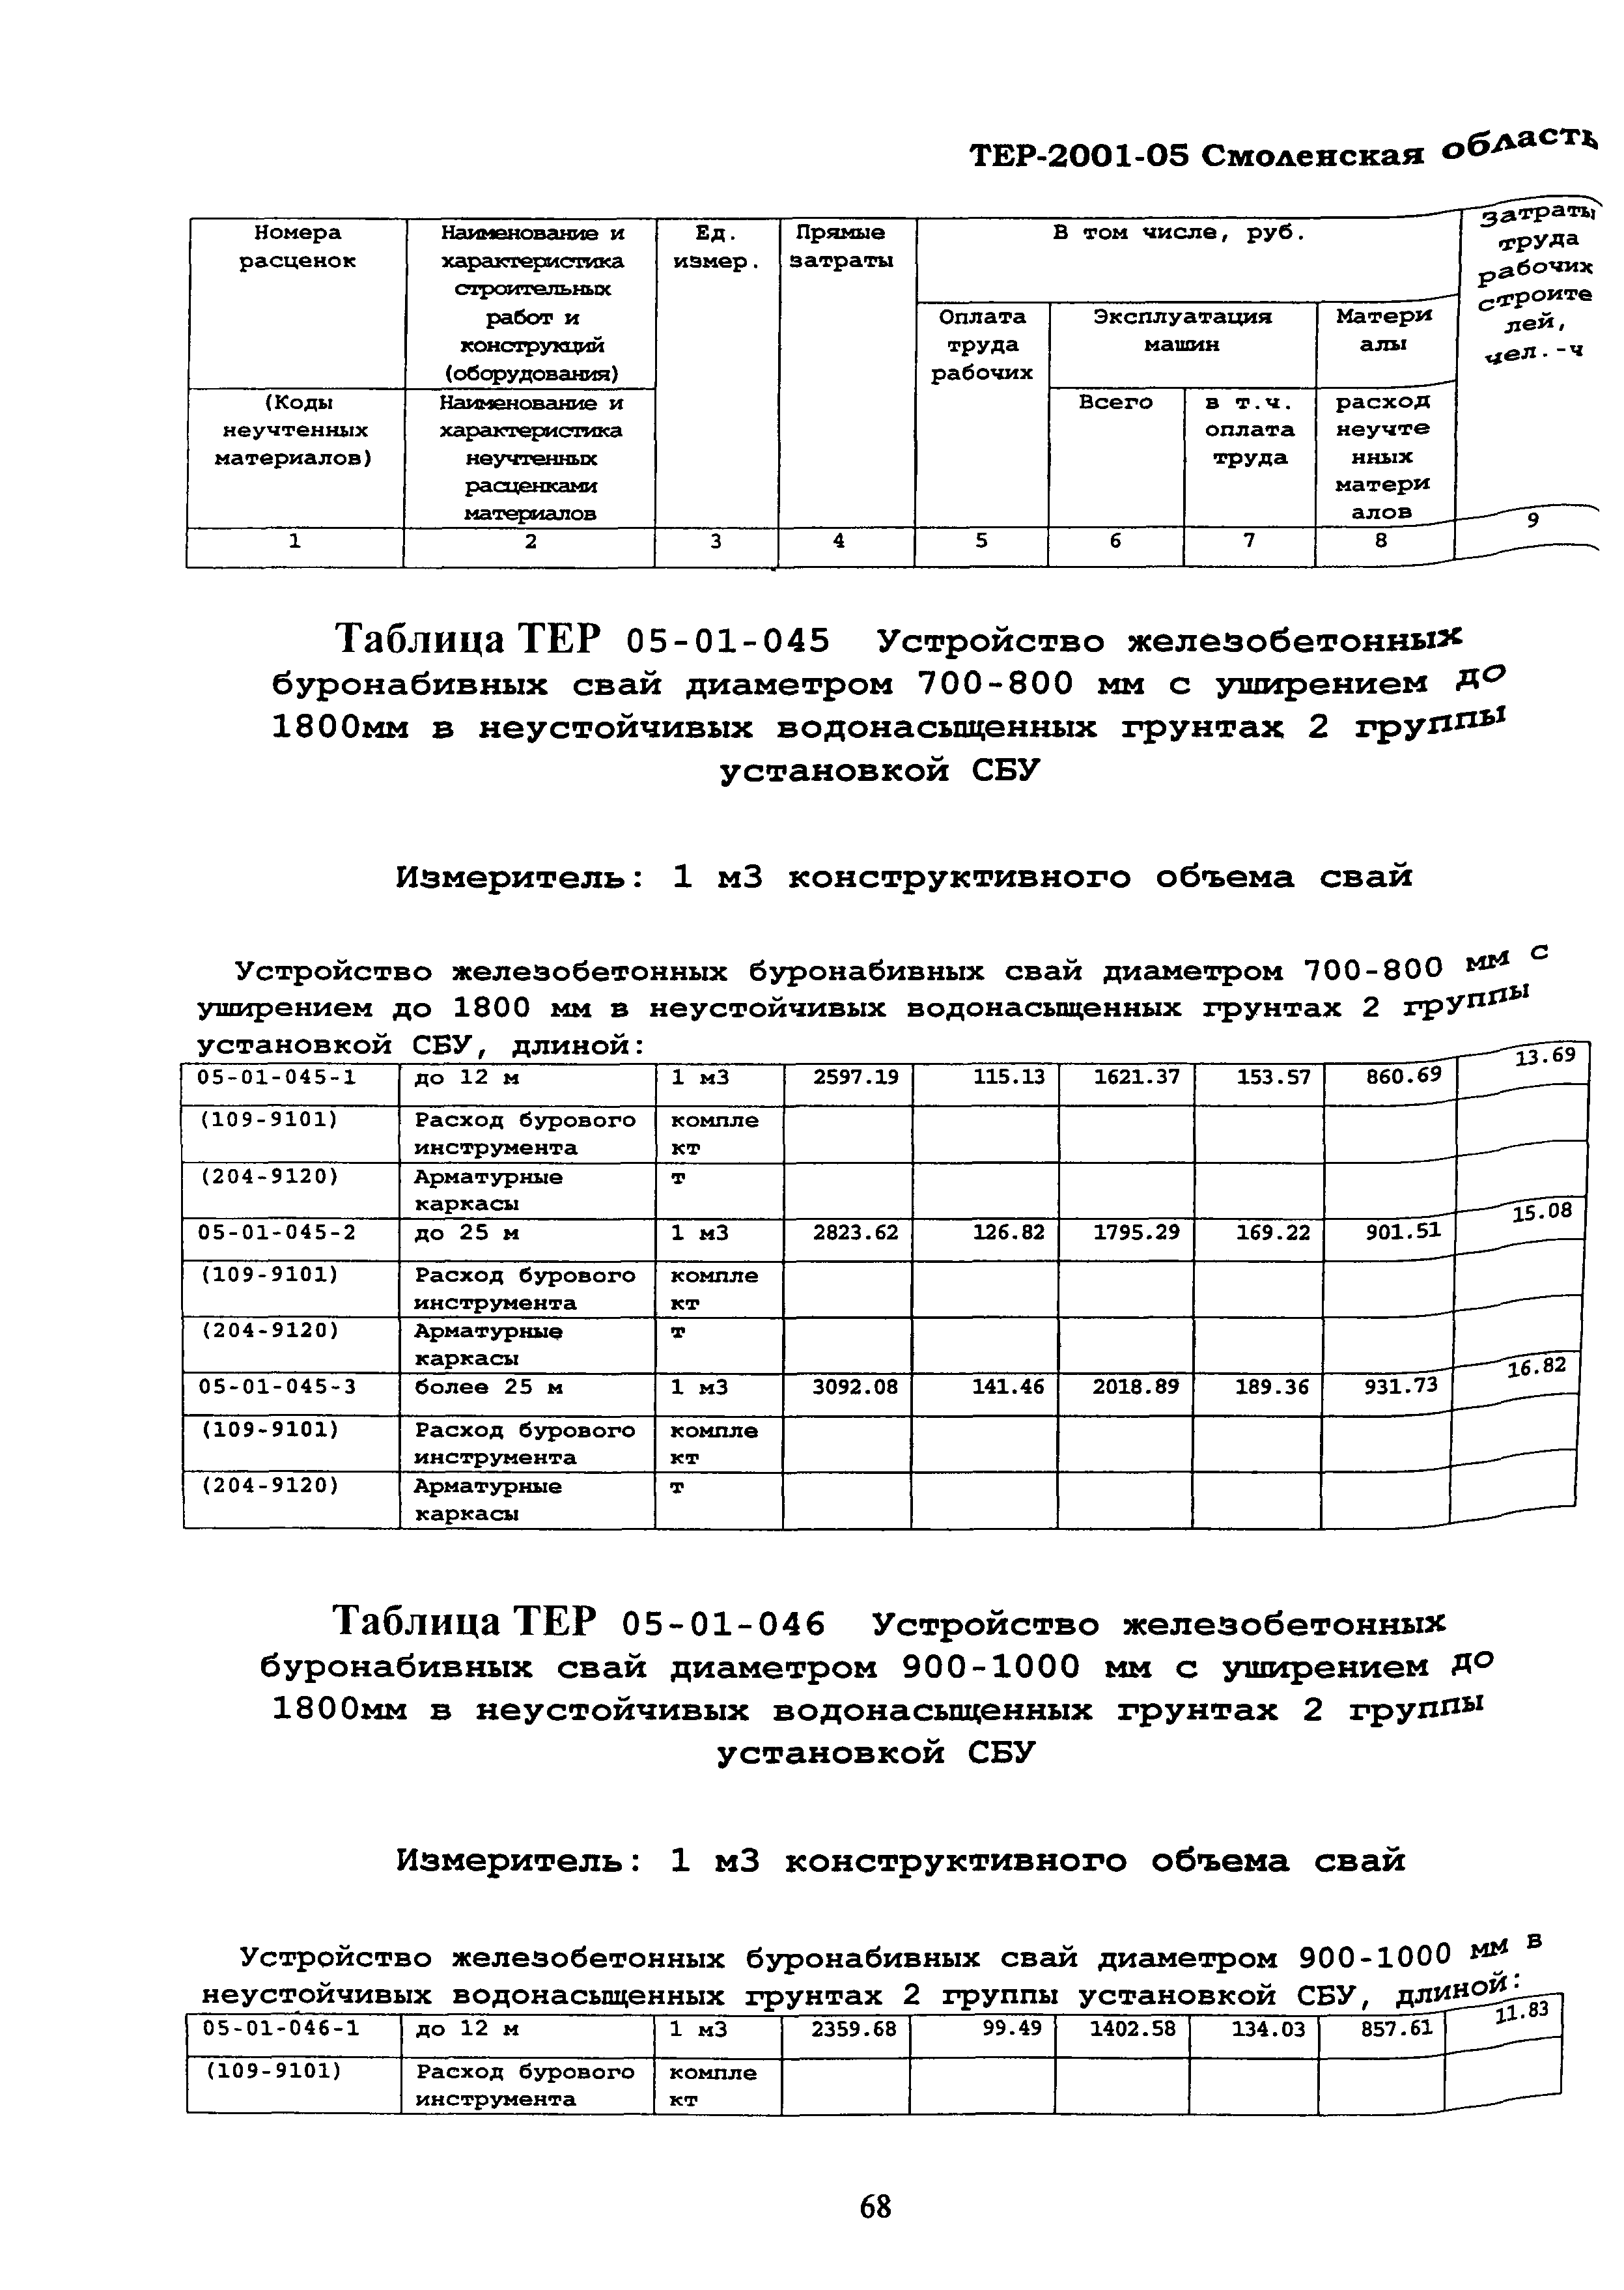 ТЕР Смоленская область 2001-05